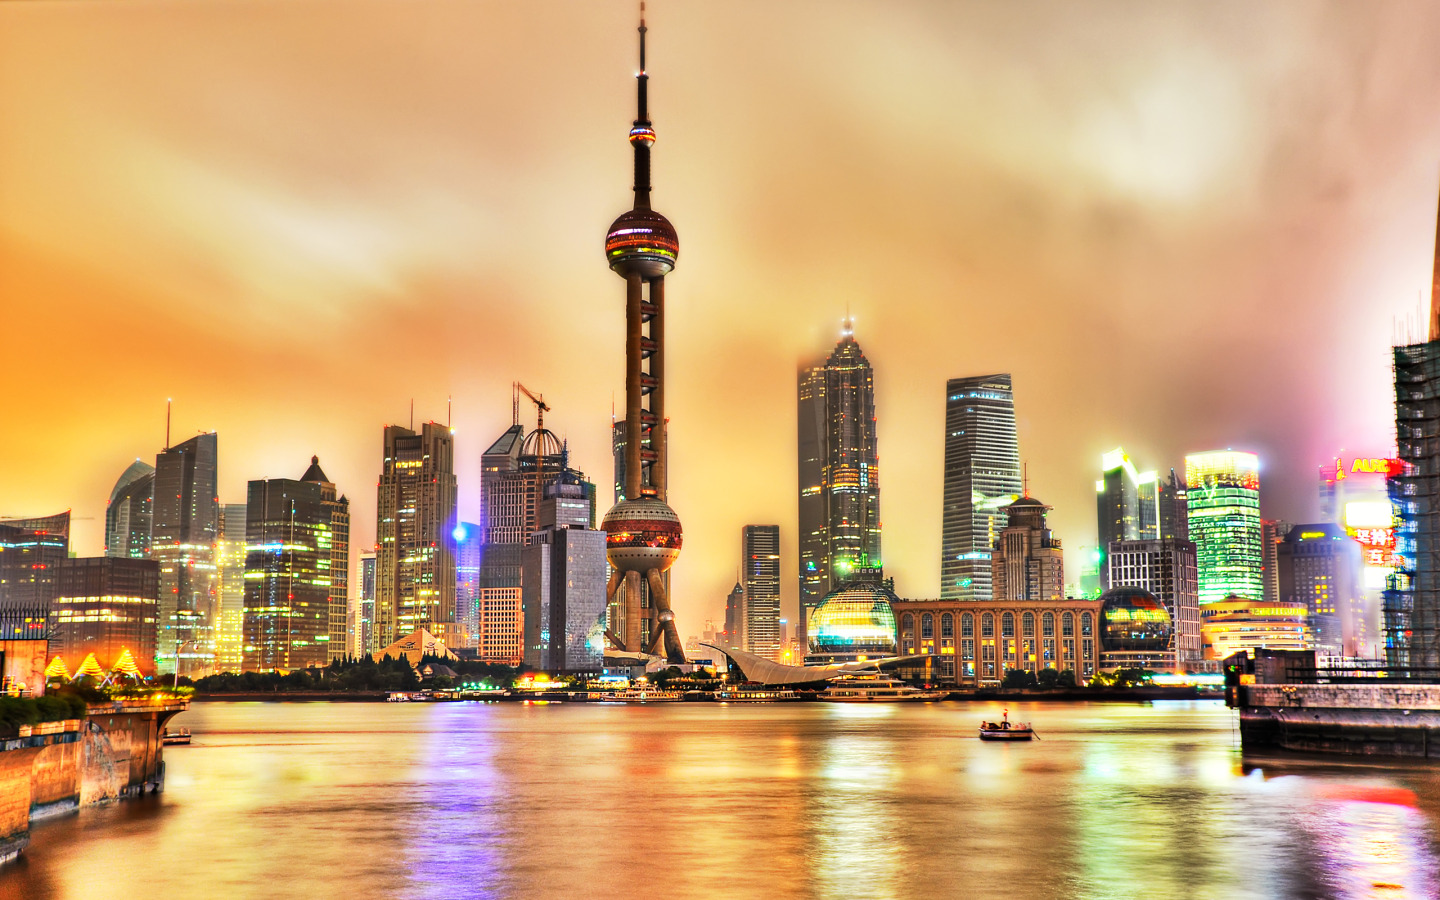 22 Tempat Wisata Di Shanghai Yang Wajib Dikunjungi - Tempatwisataunik.com